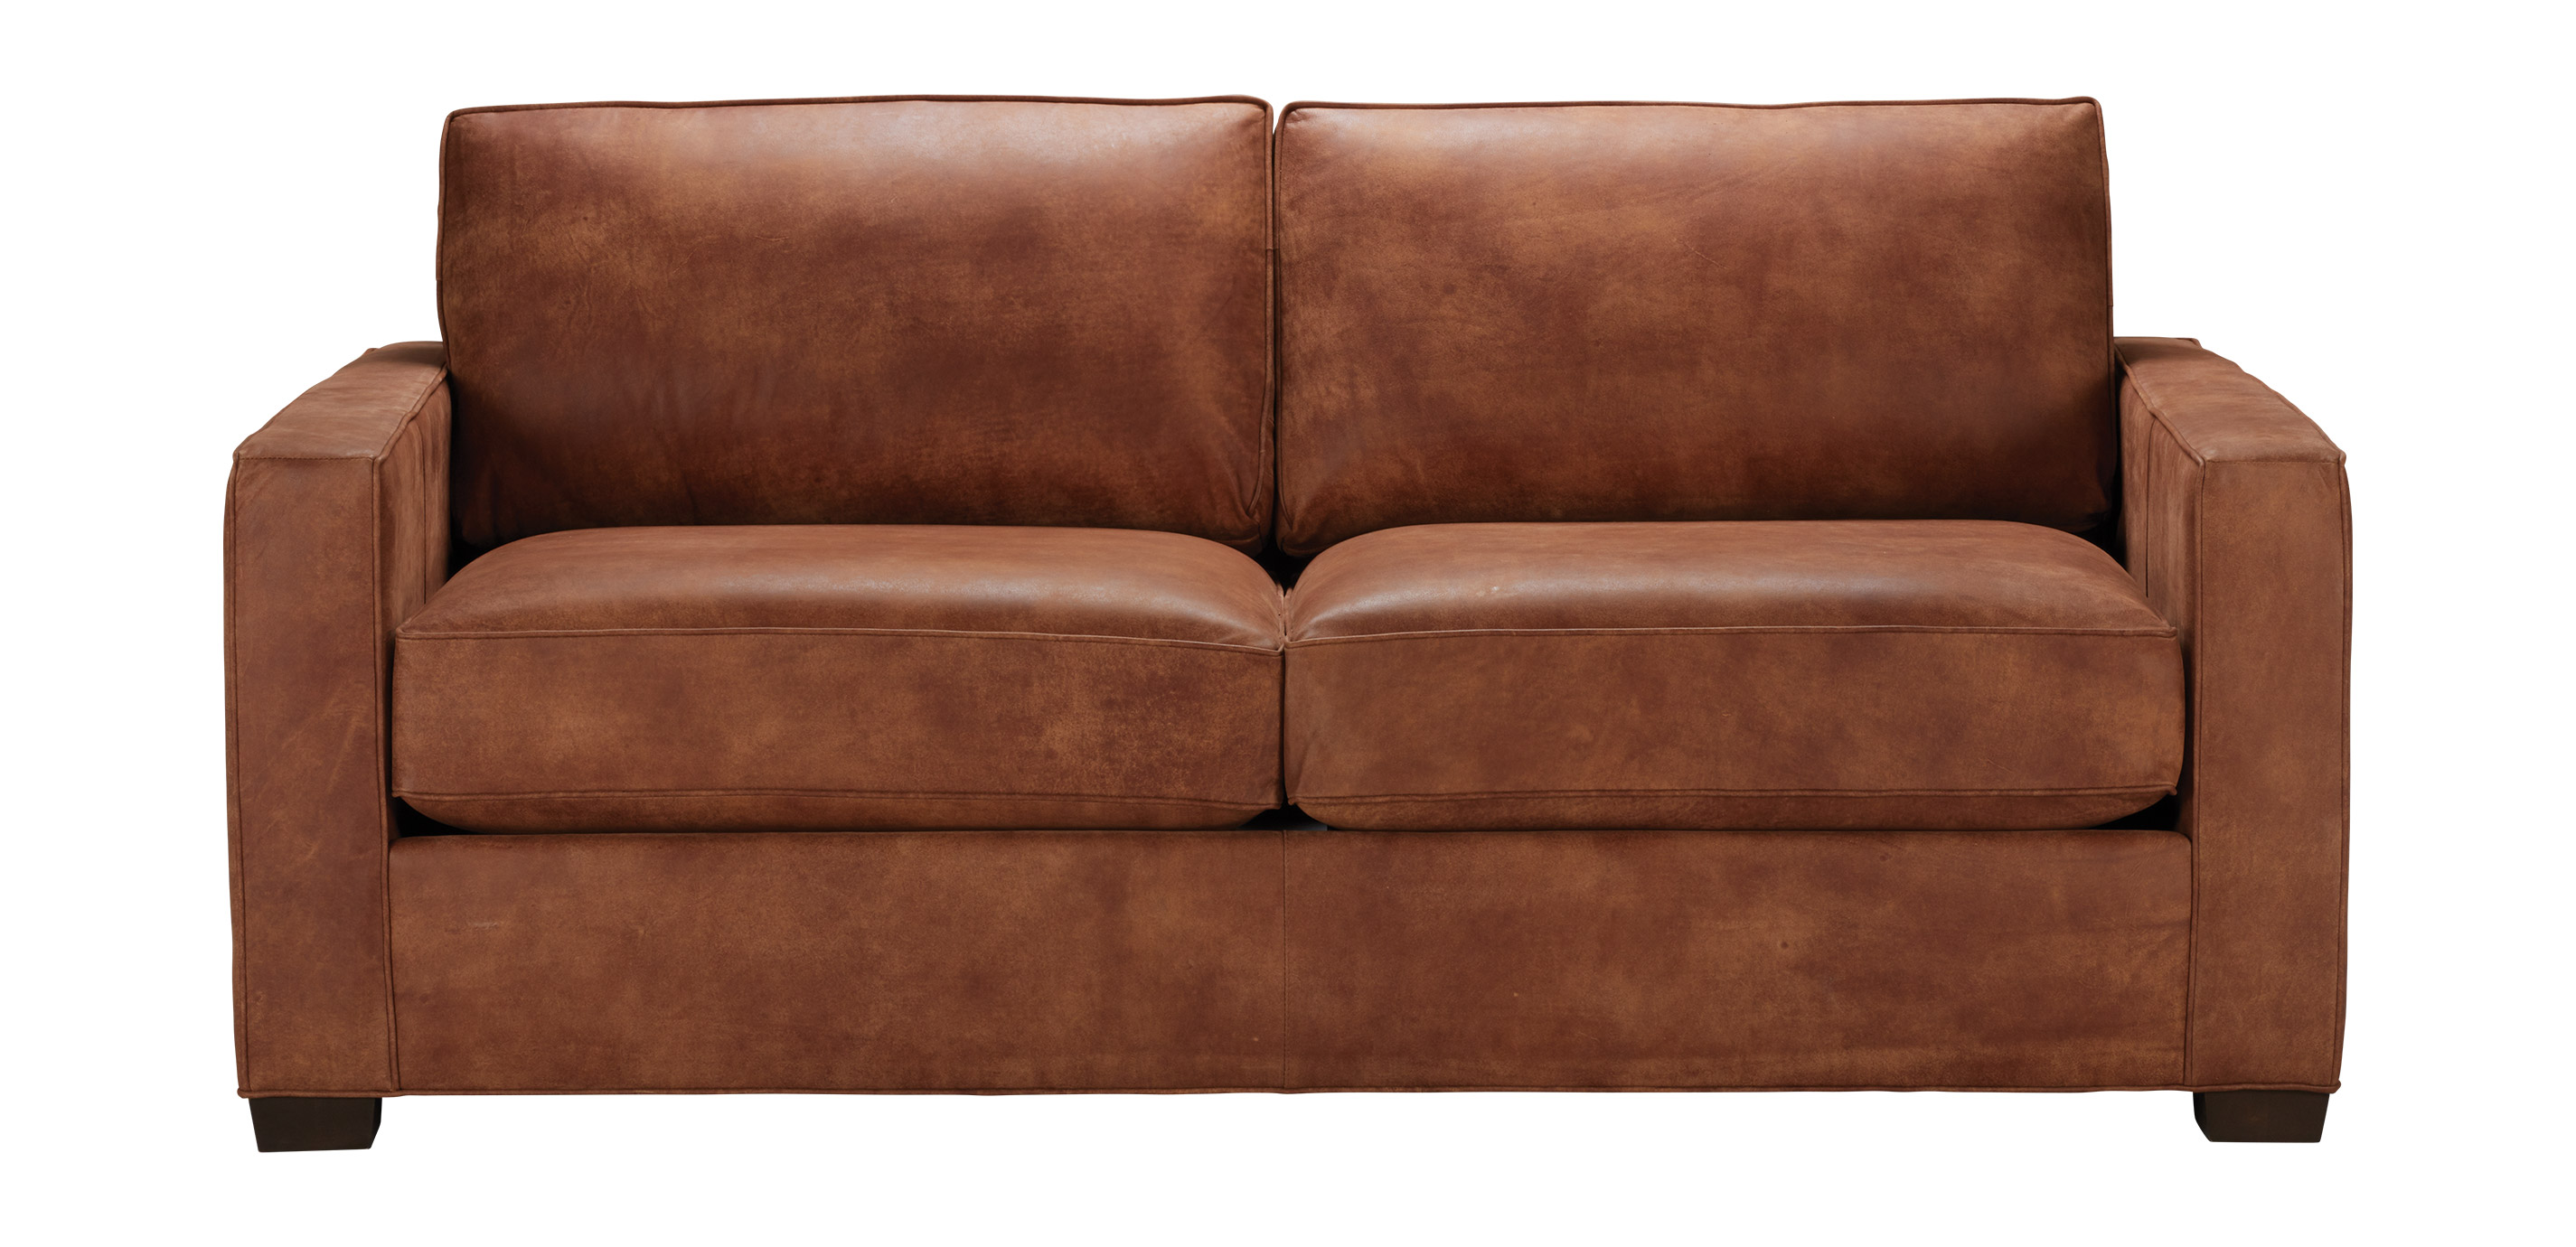 track arm leather sofa